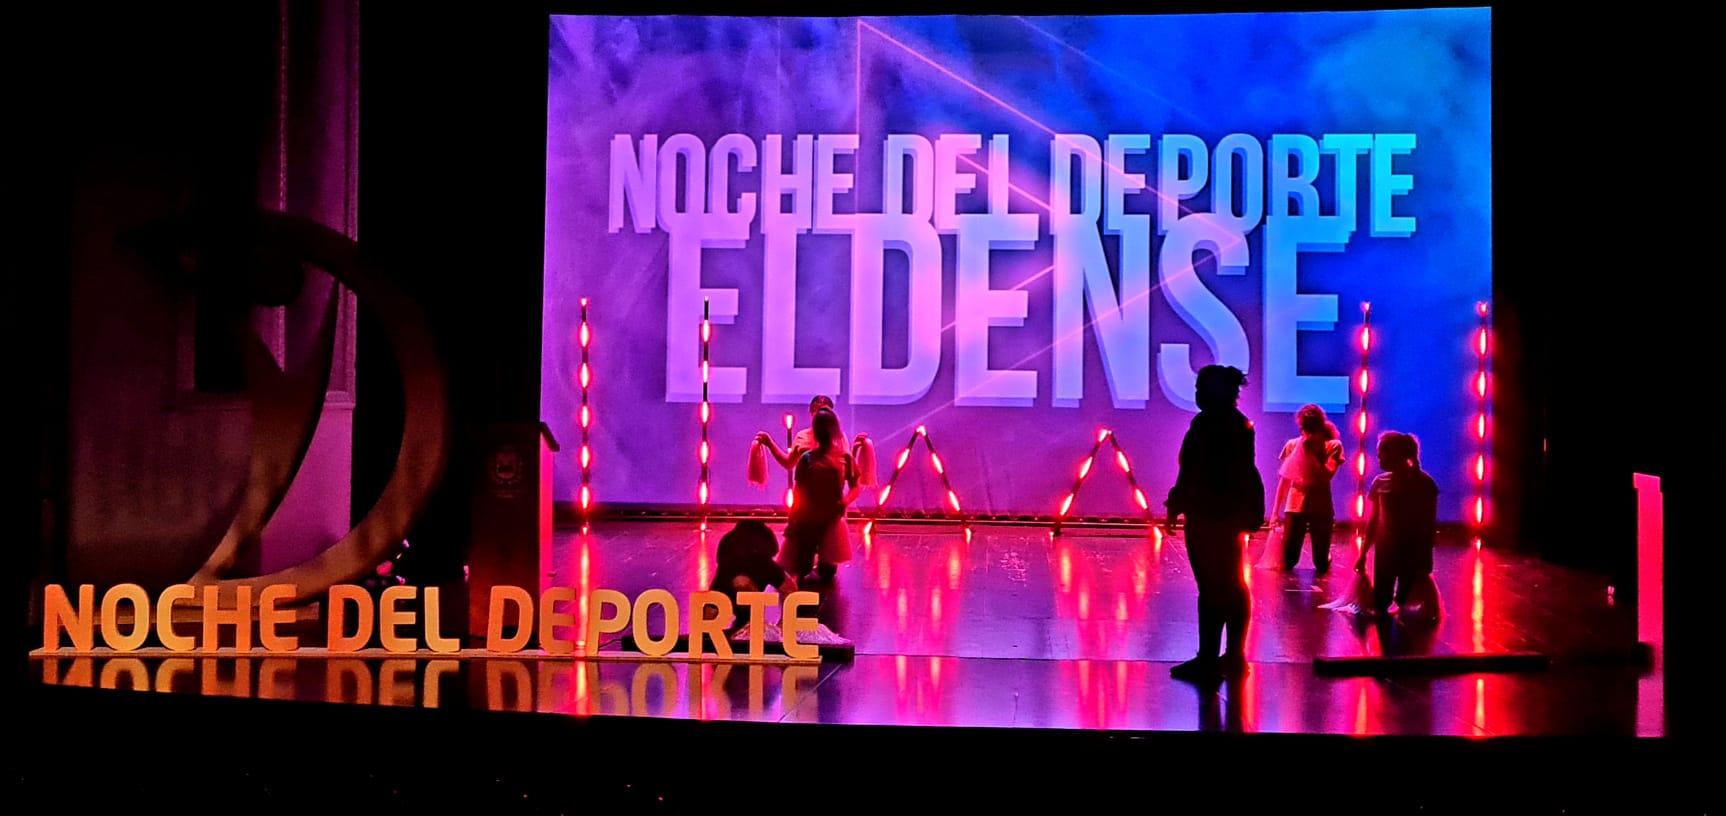 La luz protagonizará la entrega de premios de la octava edición de la Noche del Deporte Eldense que se celebra hoy en el Teatro Castelar